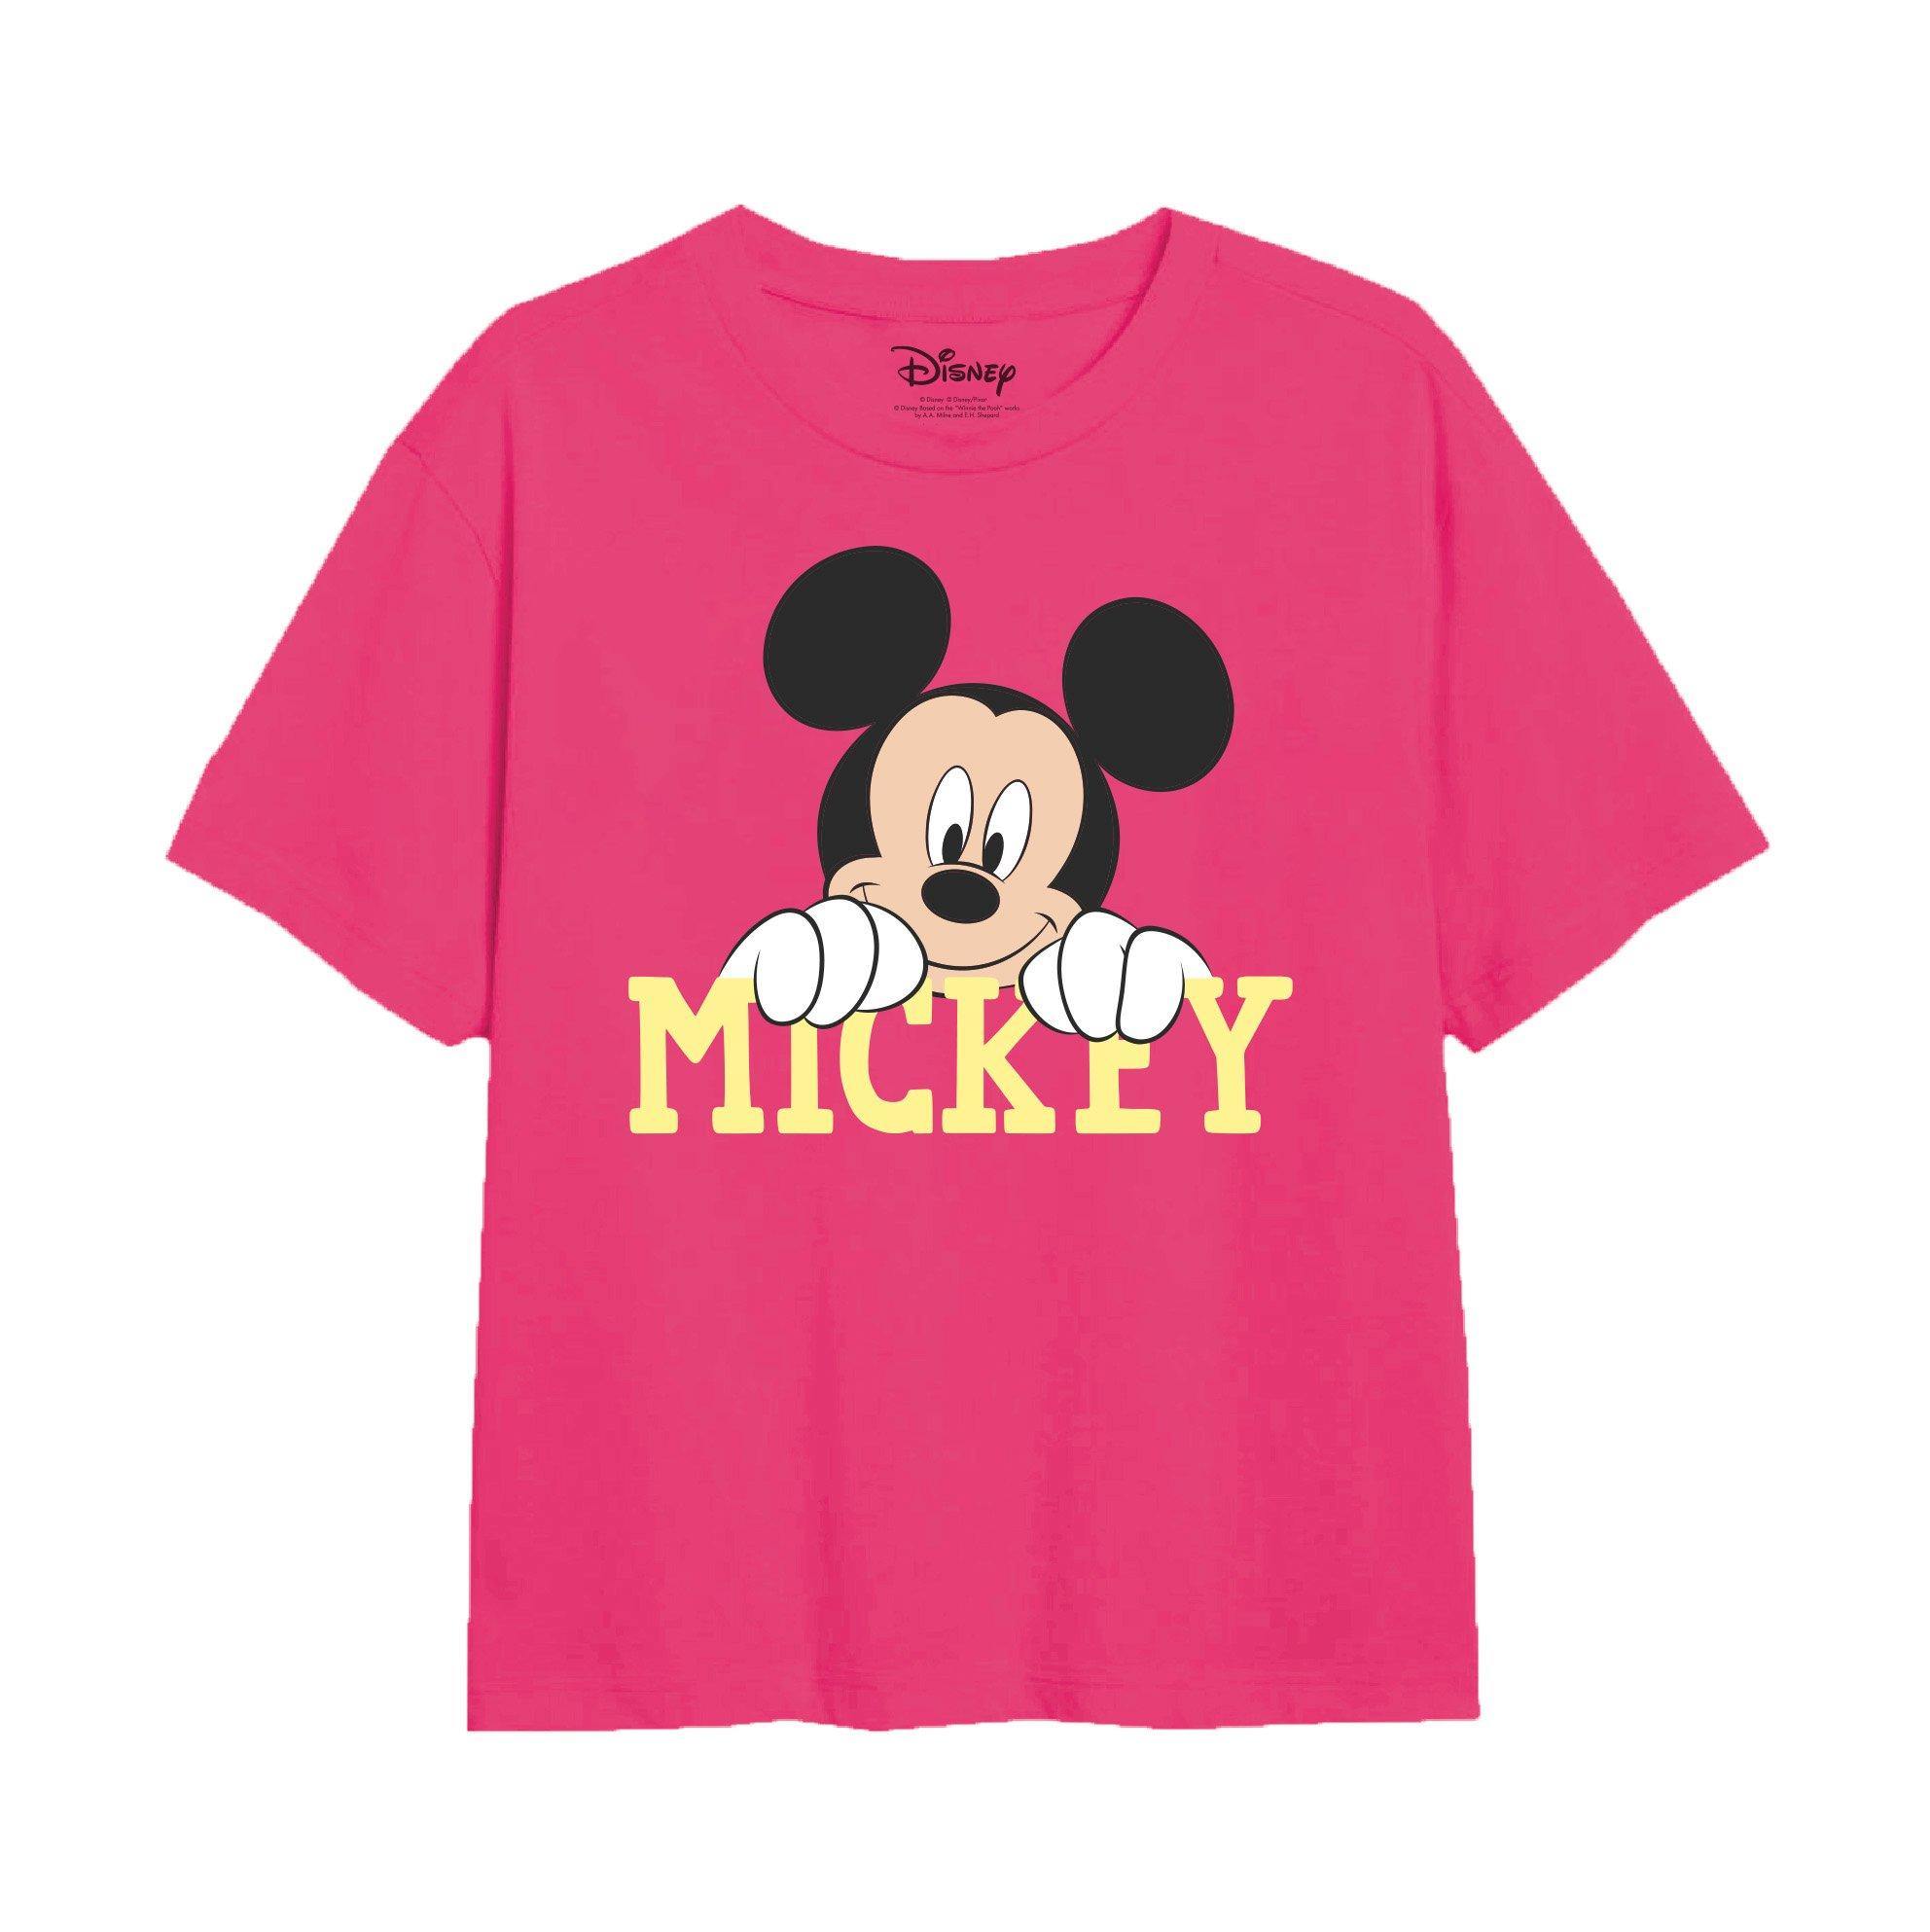 Футболка с милым лицом Микки Мауса Disney, розовый пазл микки маус и минни 35 300 500 1000 шт